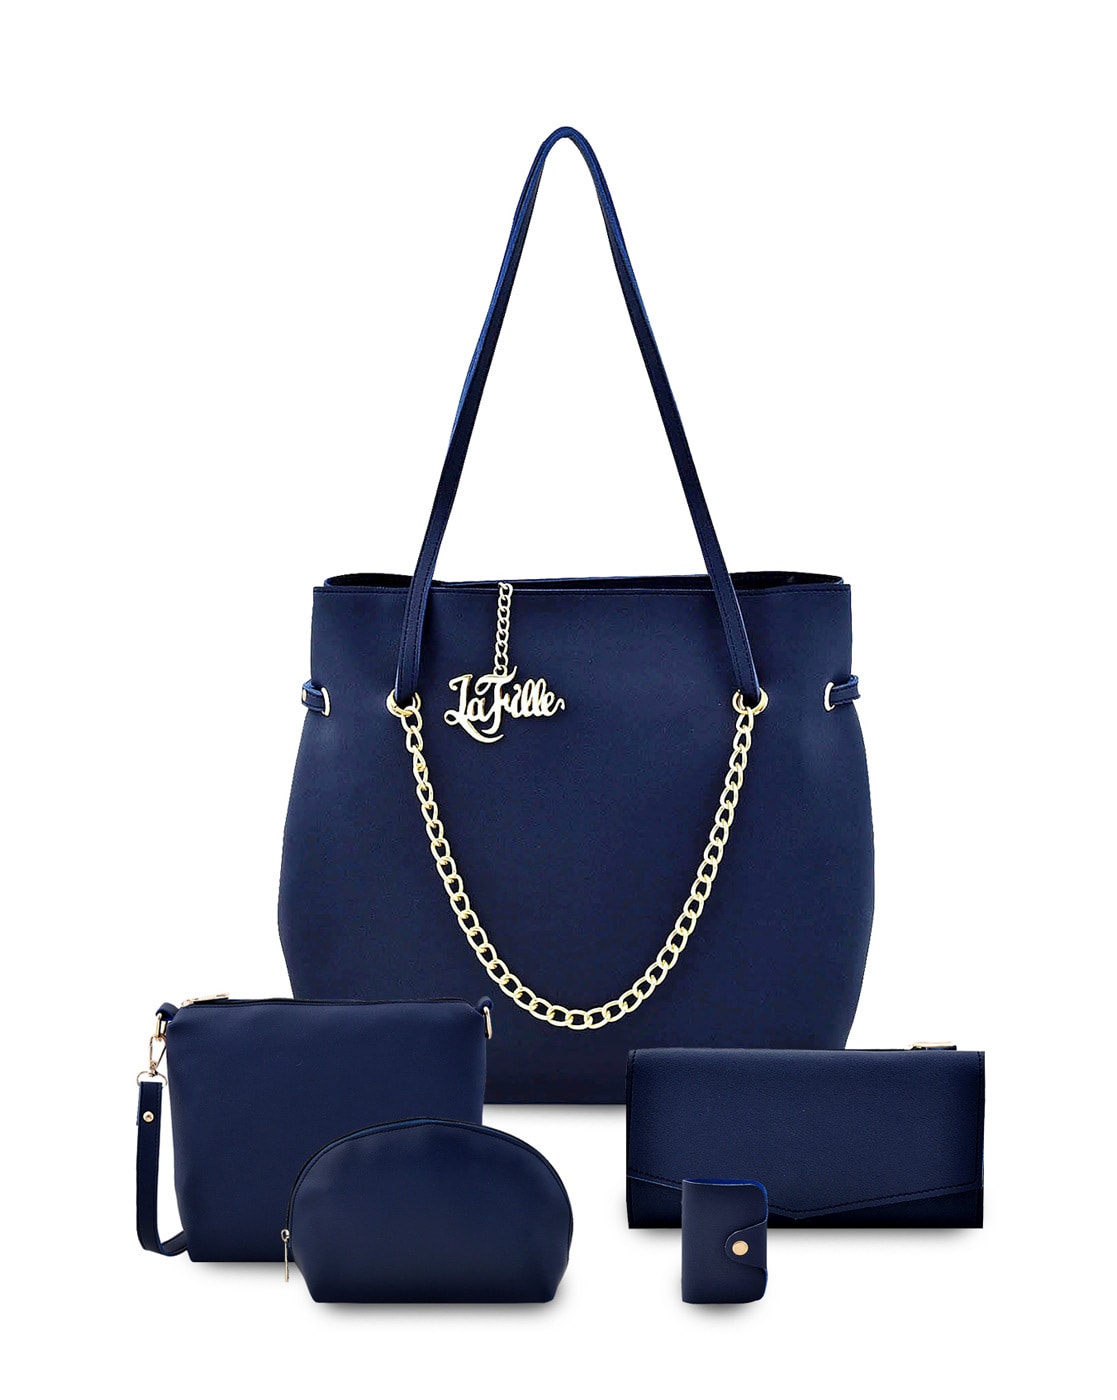 blue handbags online